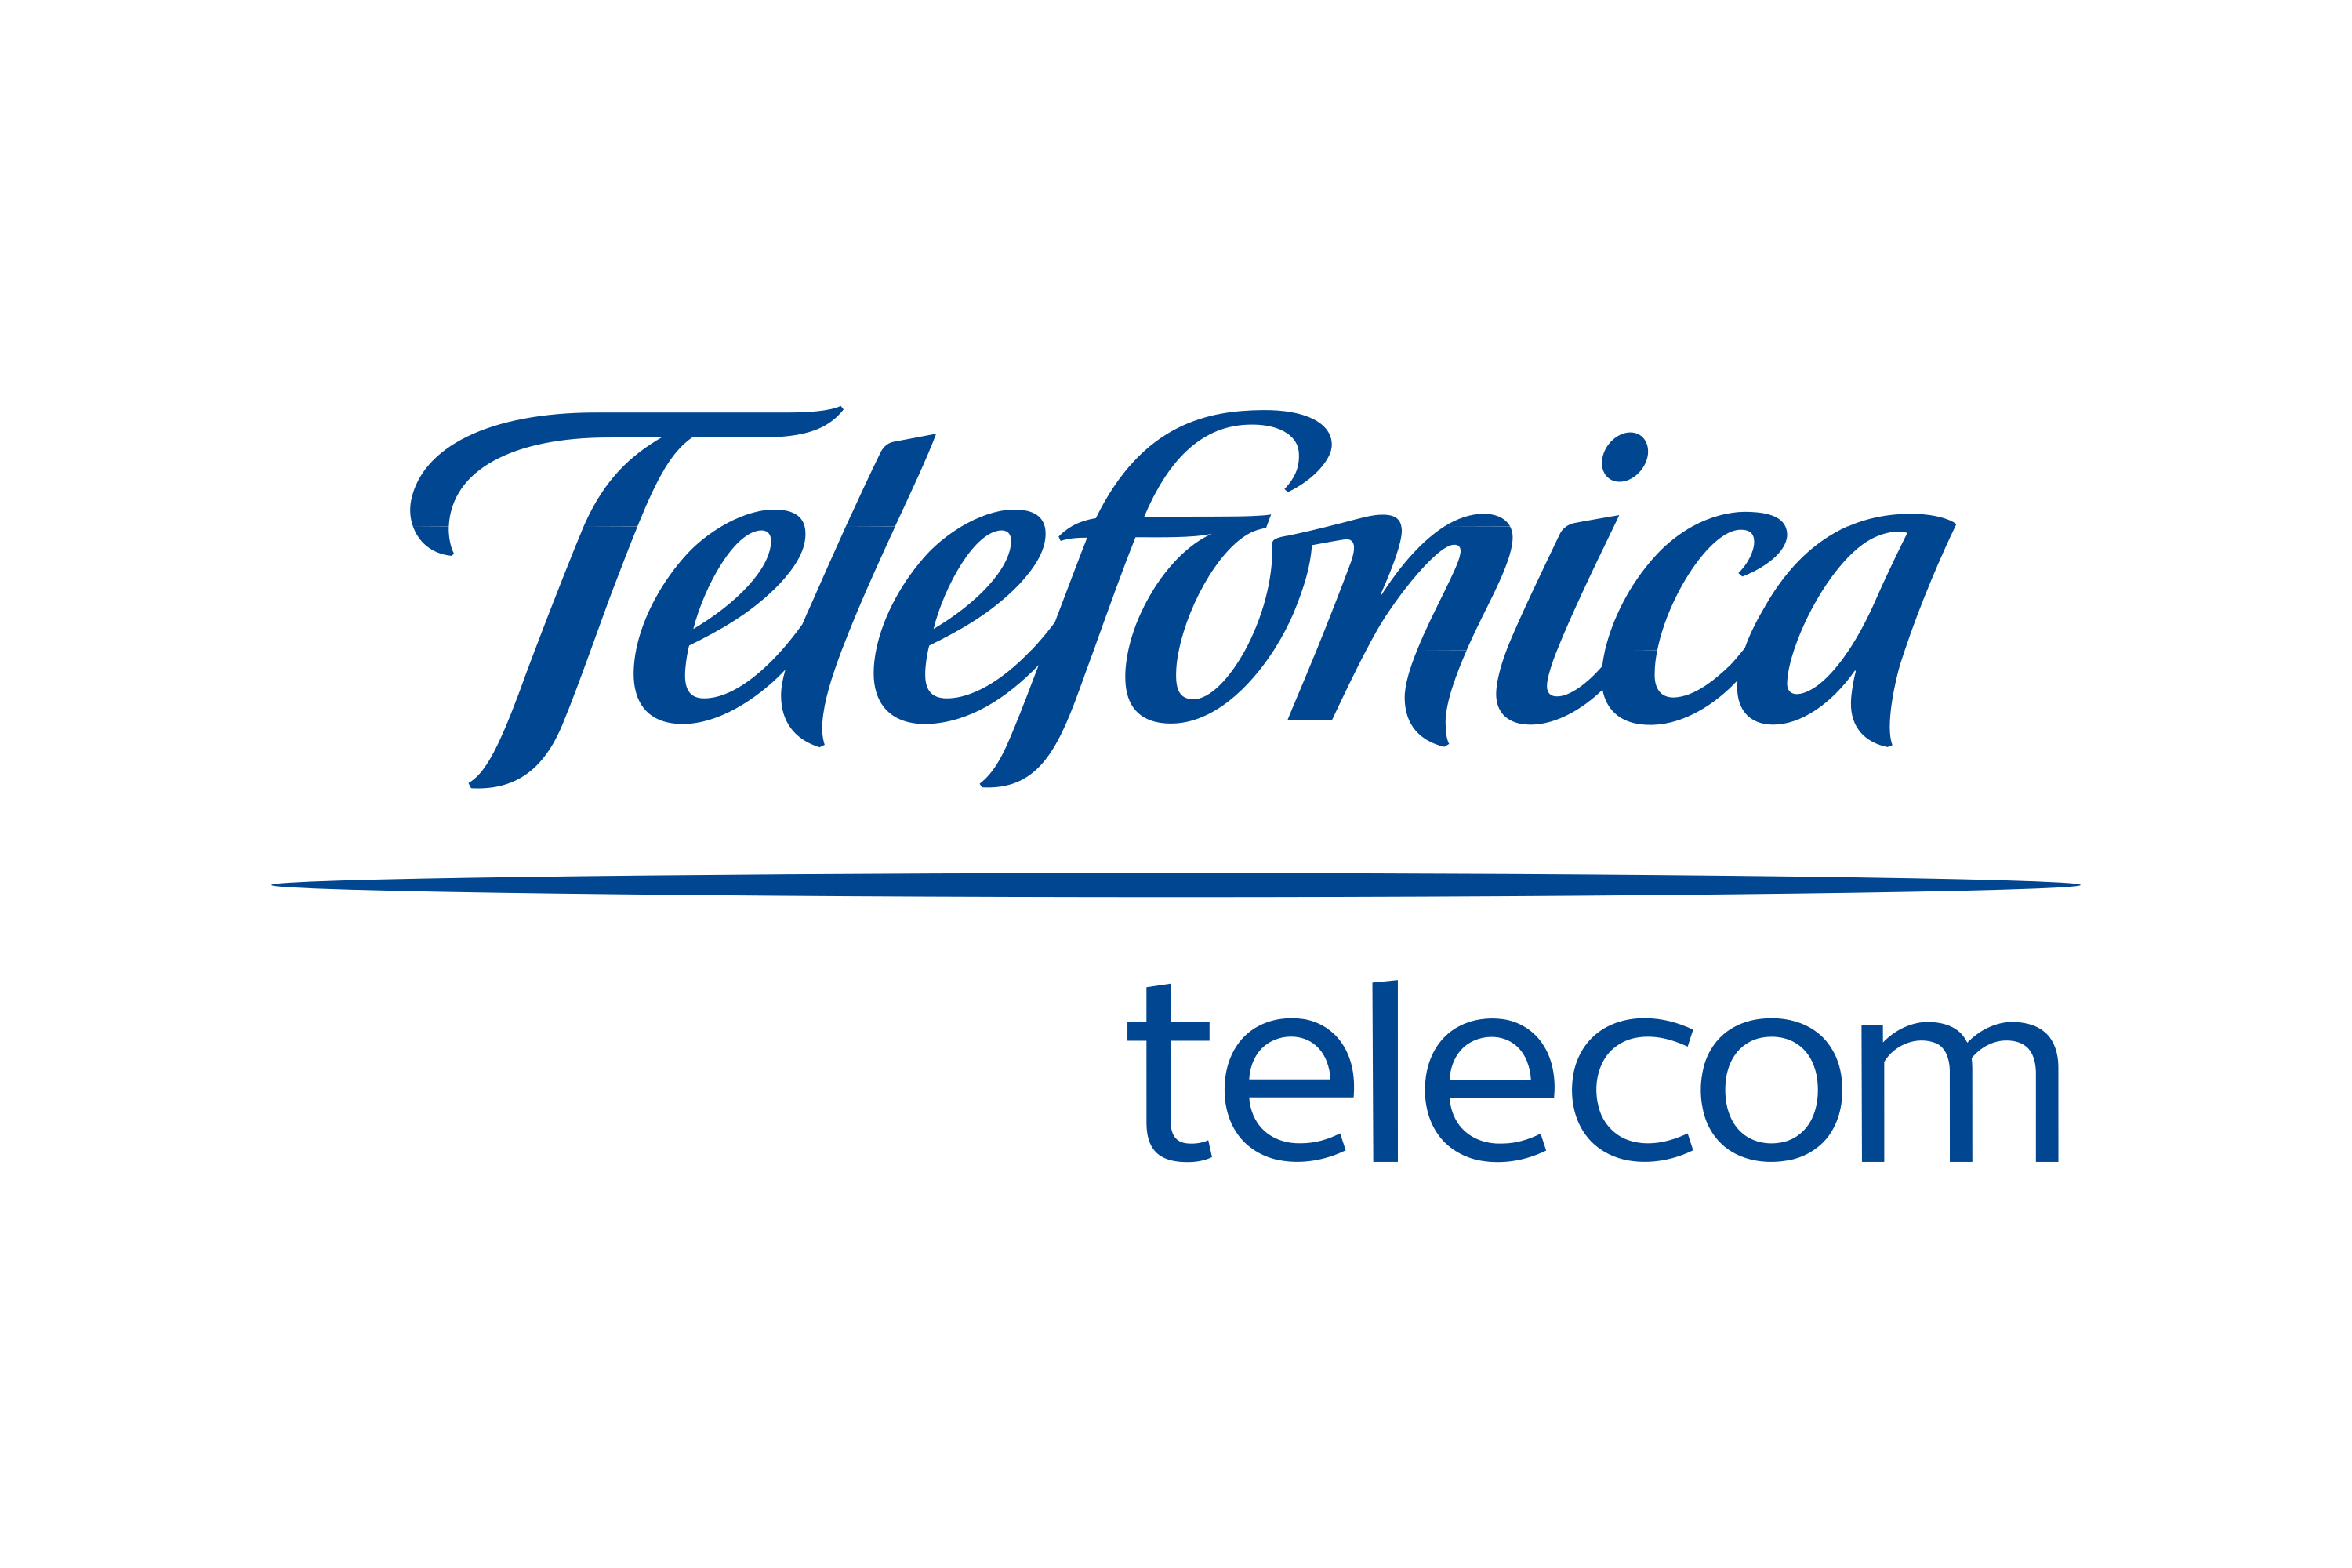 Telefonica Telecom Logo